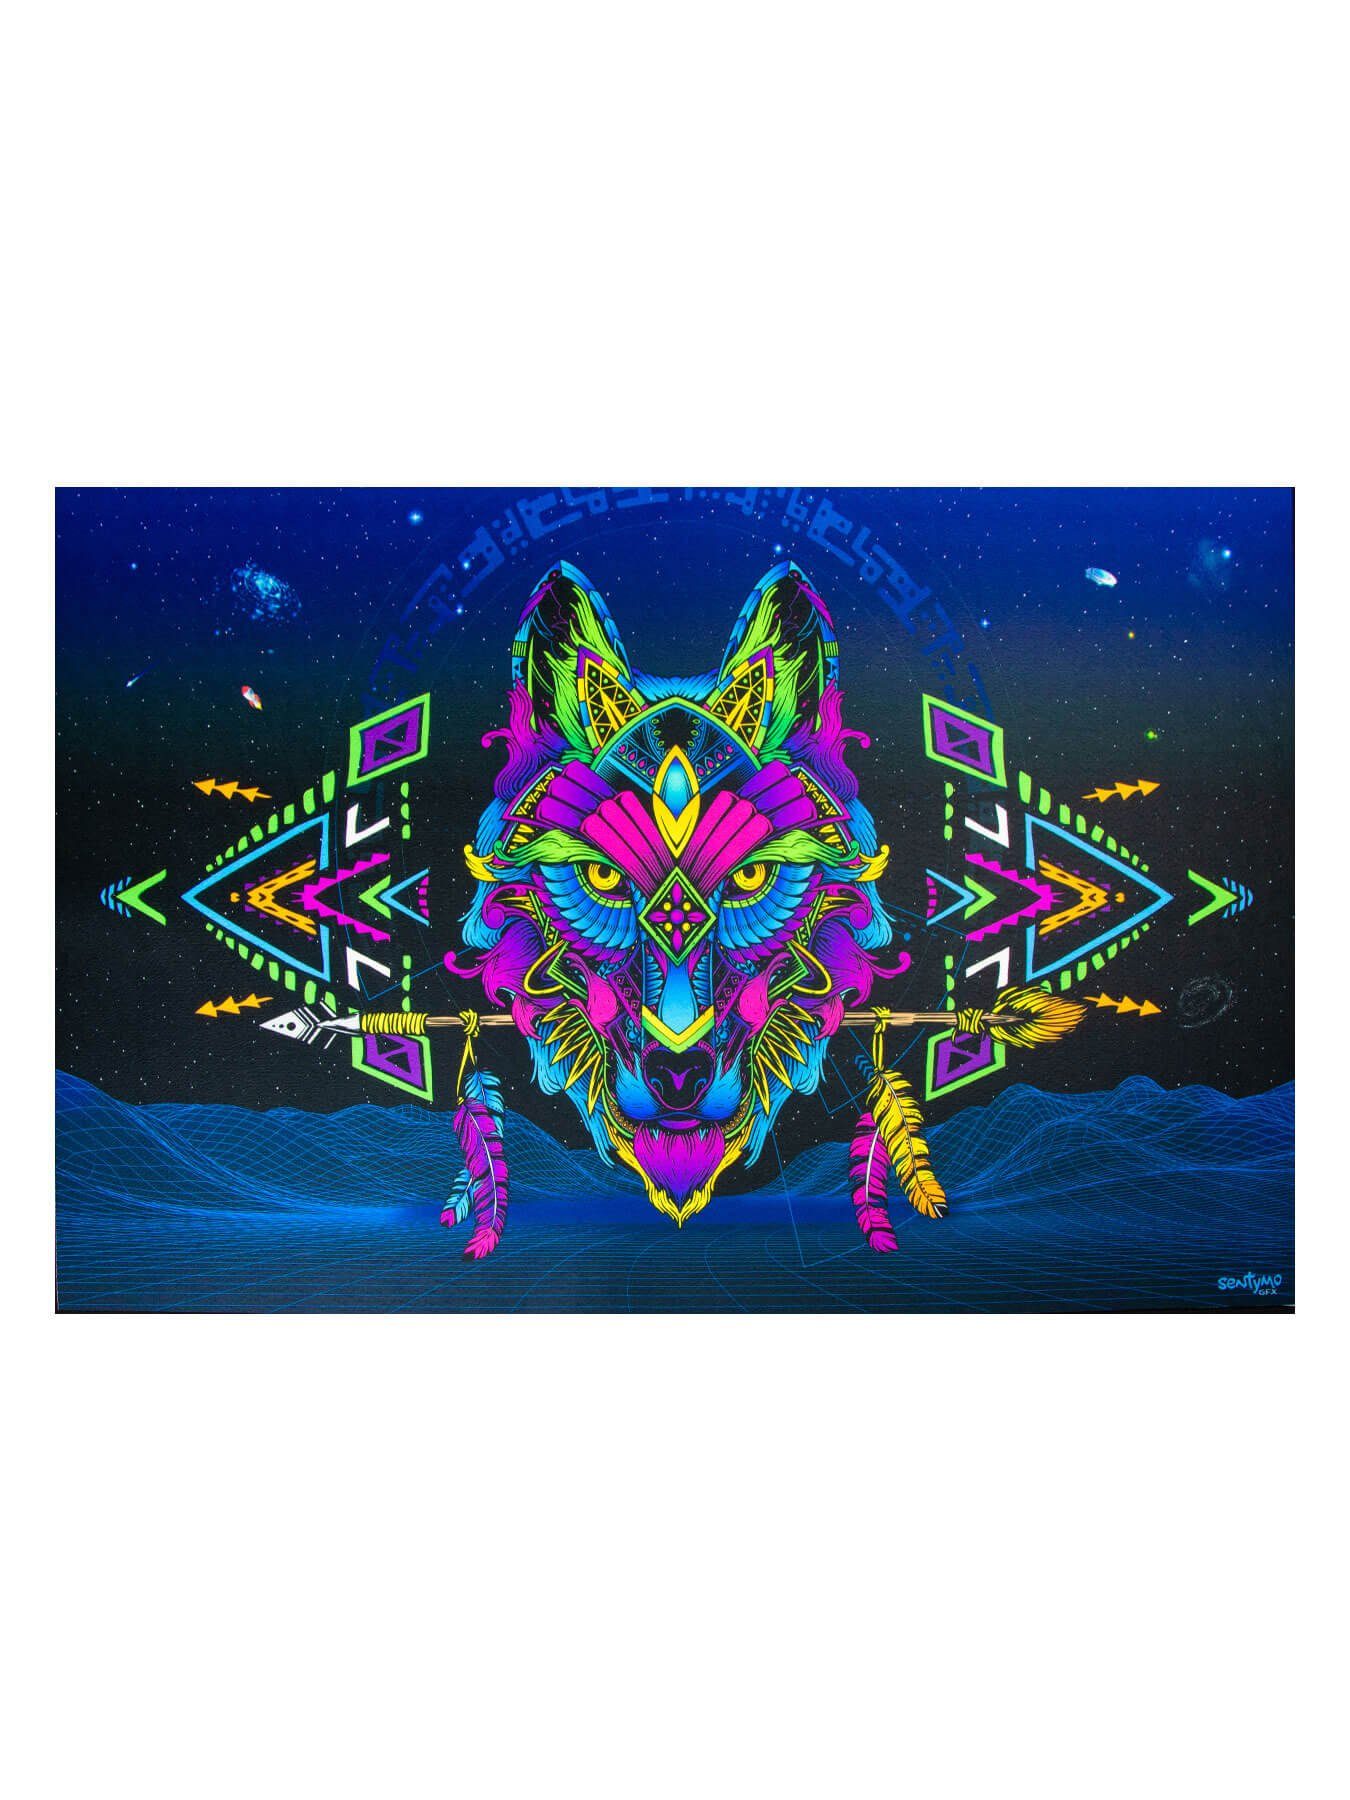 Läufer Schwarzlicht Bodenbelag Neon "Sentymo Wolf", 0,9x1,5m, PSYWORK, rechteckig, UV-aktiv, leuchtet unter Schwarzlicht